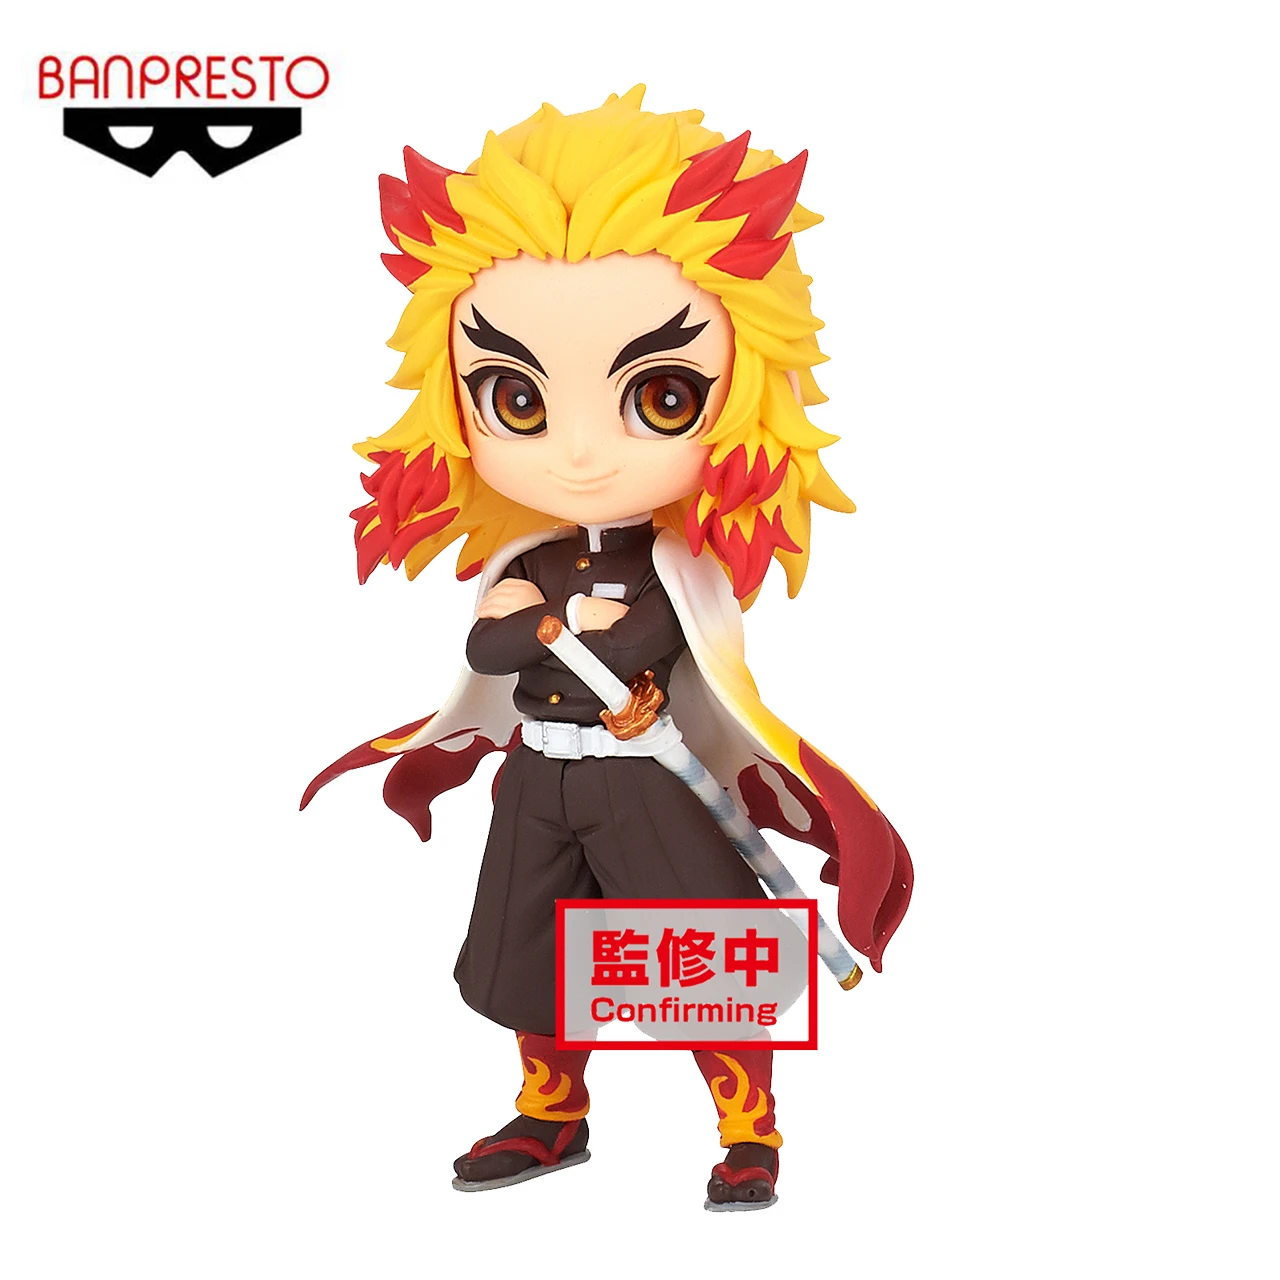 

Фонарь Banpresto 7 см, рассекающий демонов, Rengoku Kyoujurou Q Ver. Японская фигурка аниме, игрушка, фигурные наружные украшения, модель, игрушки в подарок